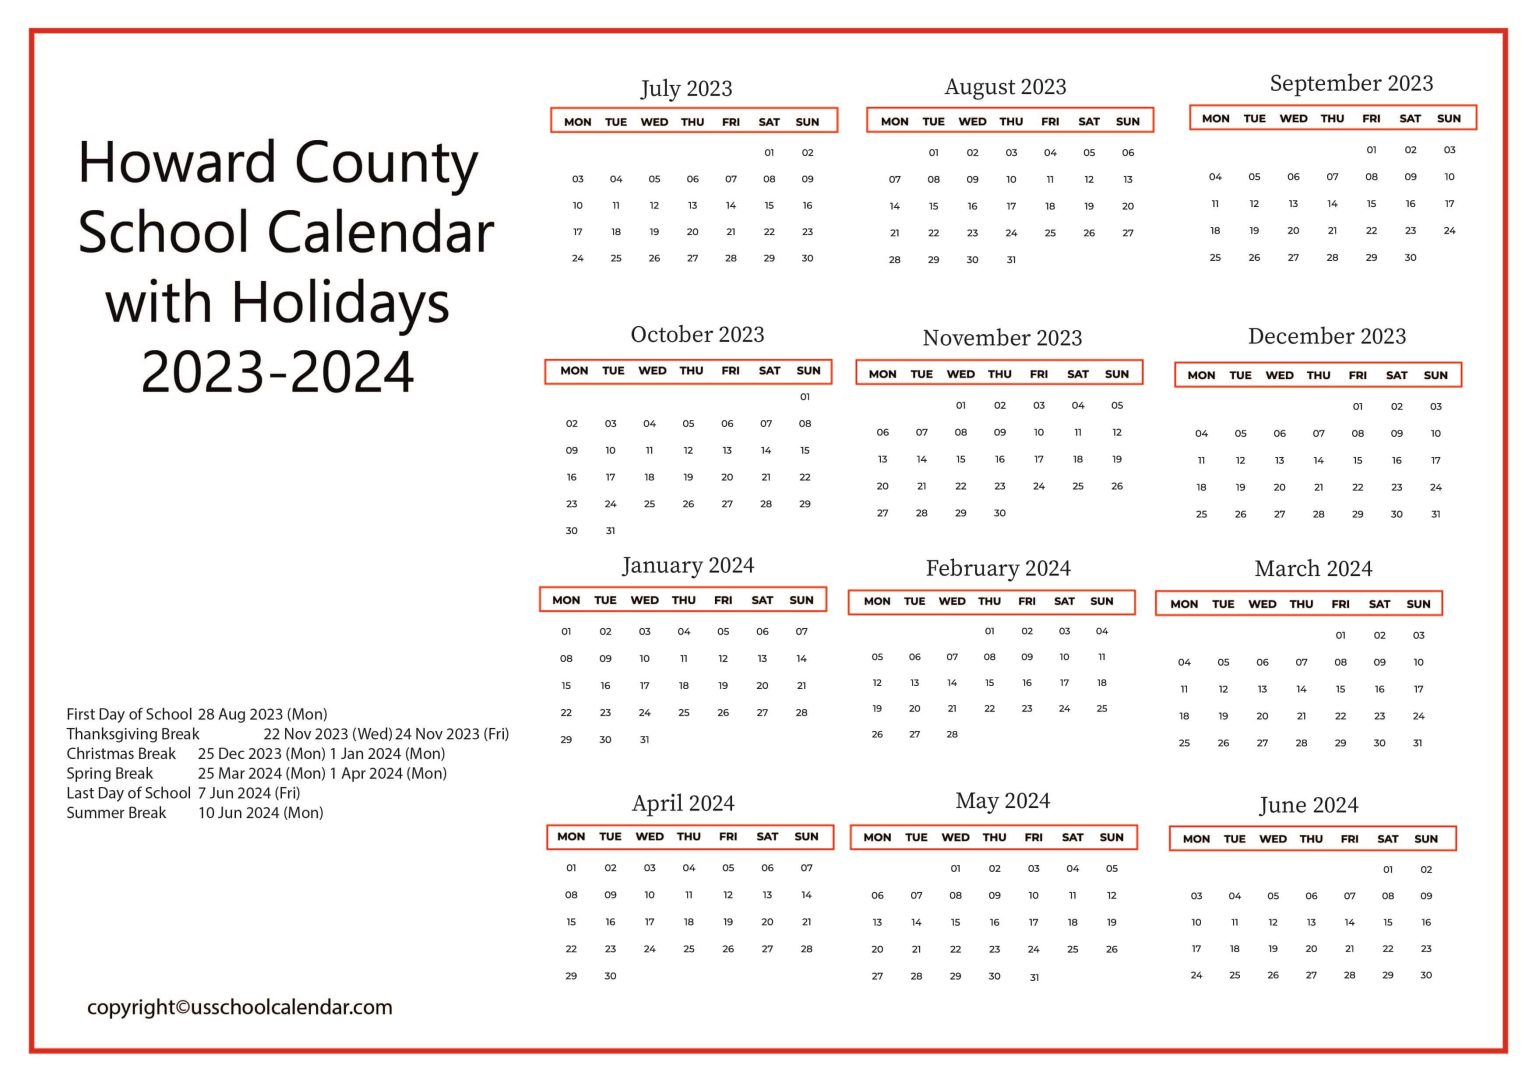 howard-county-school-calendar-with-holidays-2023-2024